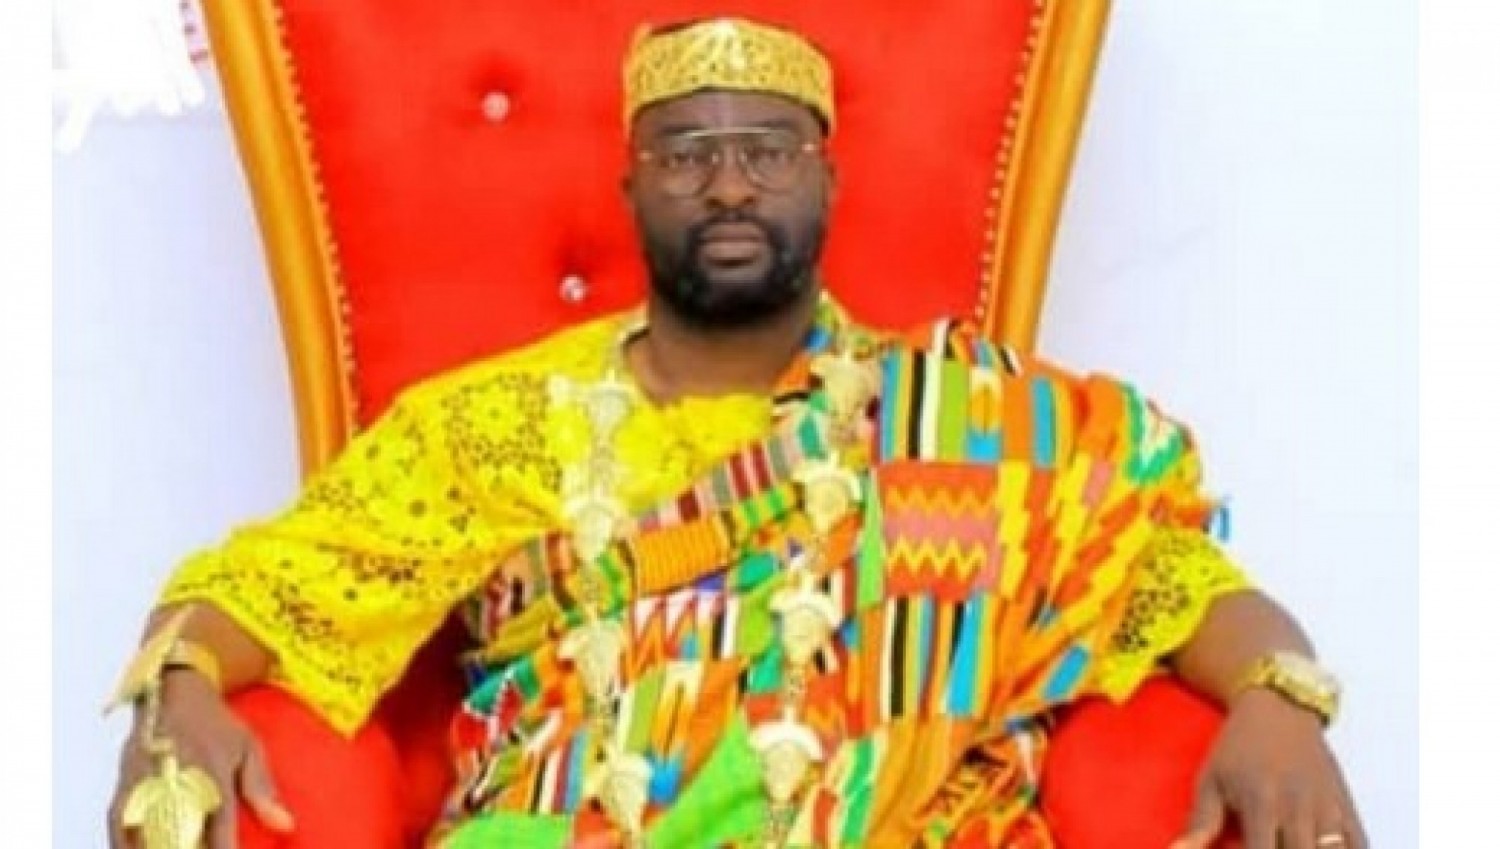 Côte d'Ivoire : Adjamé Bingerville, un individu se réclamant chef de village jeté en prison pour des délits de «crimes économiques et usurpation de titre »